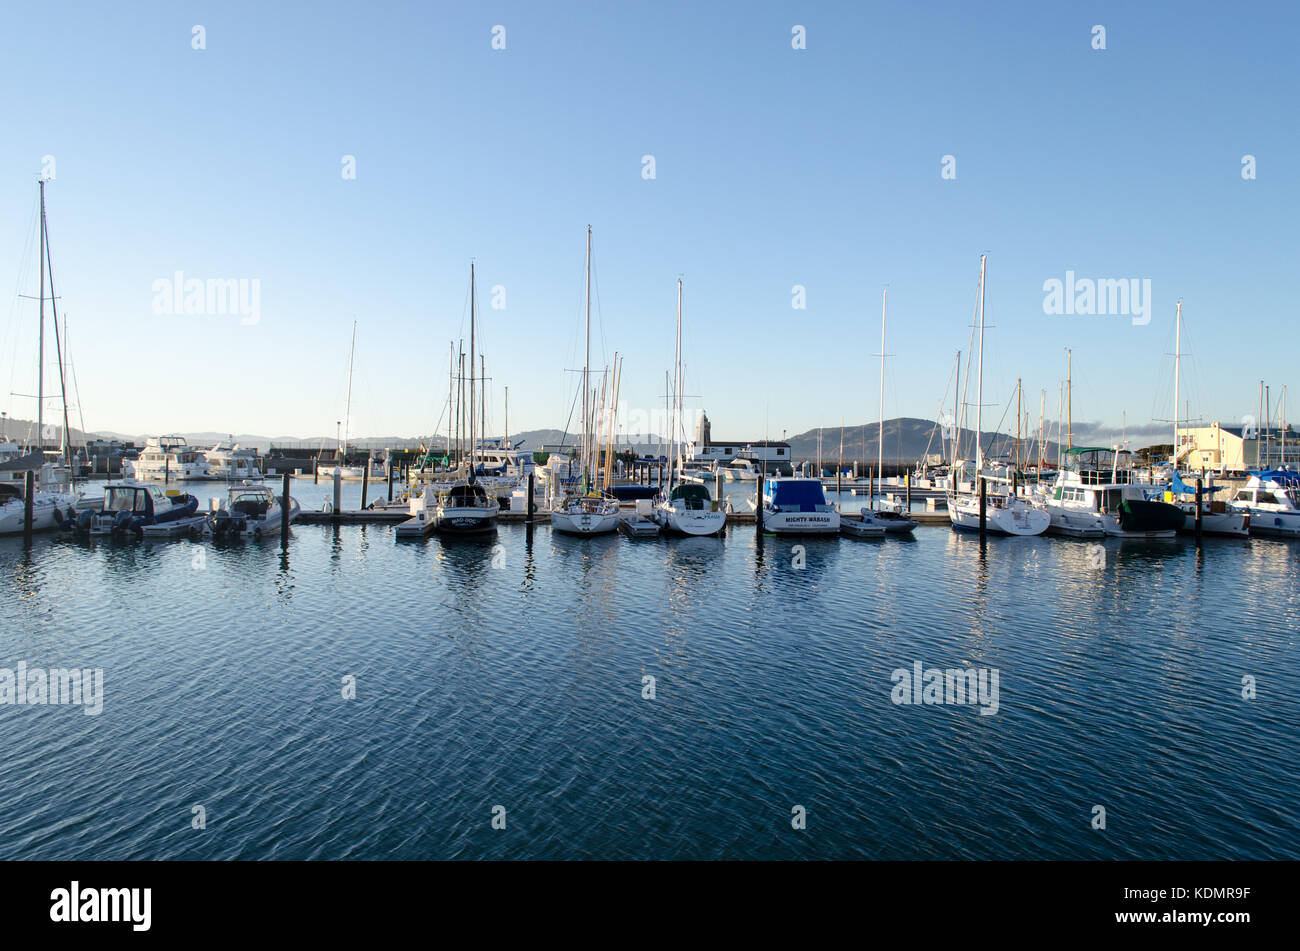 Quartier du port de plaisance de San Francisco, CA, united states Banque D'Images